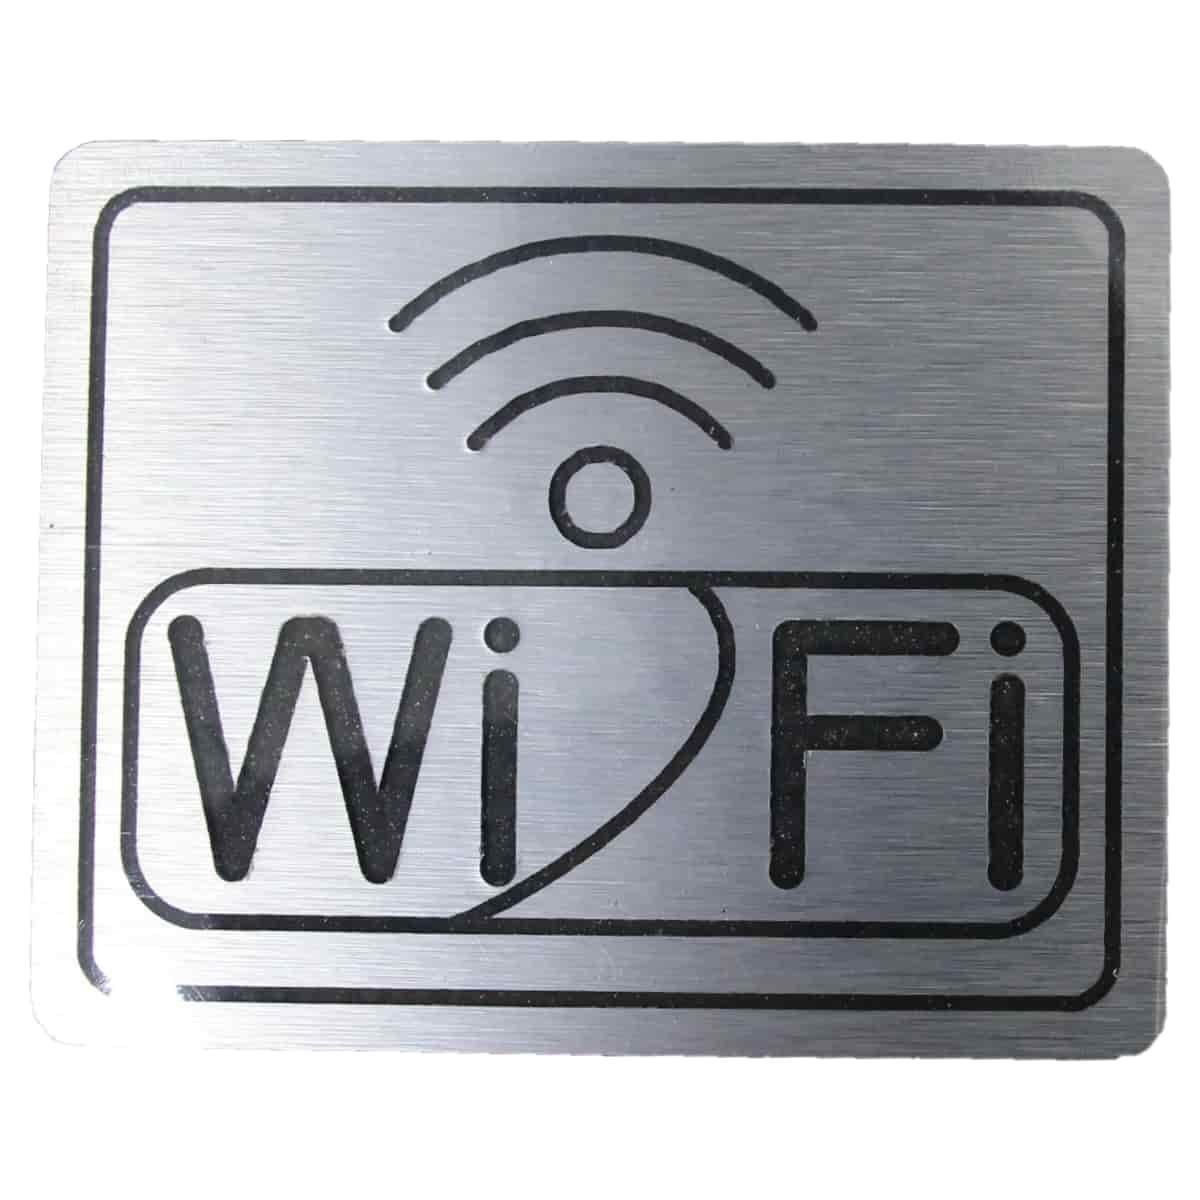 Placa De Sinalização Em Acm 12 X 17Cm - Wi-Fi - 1